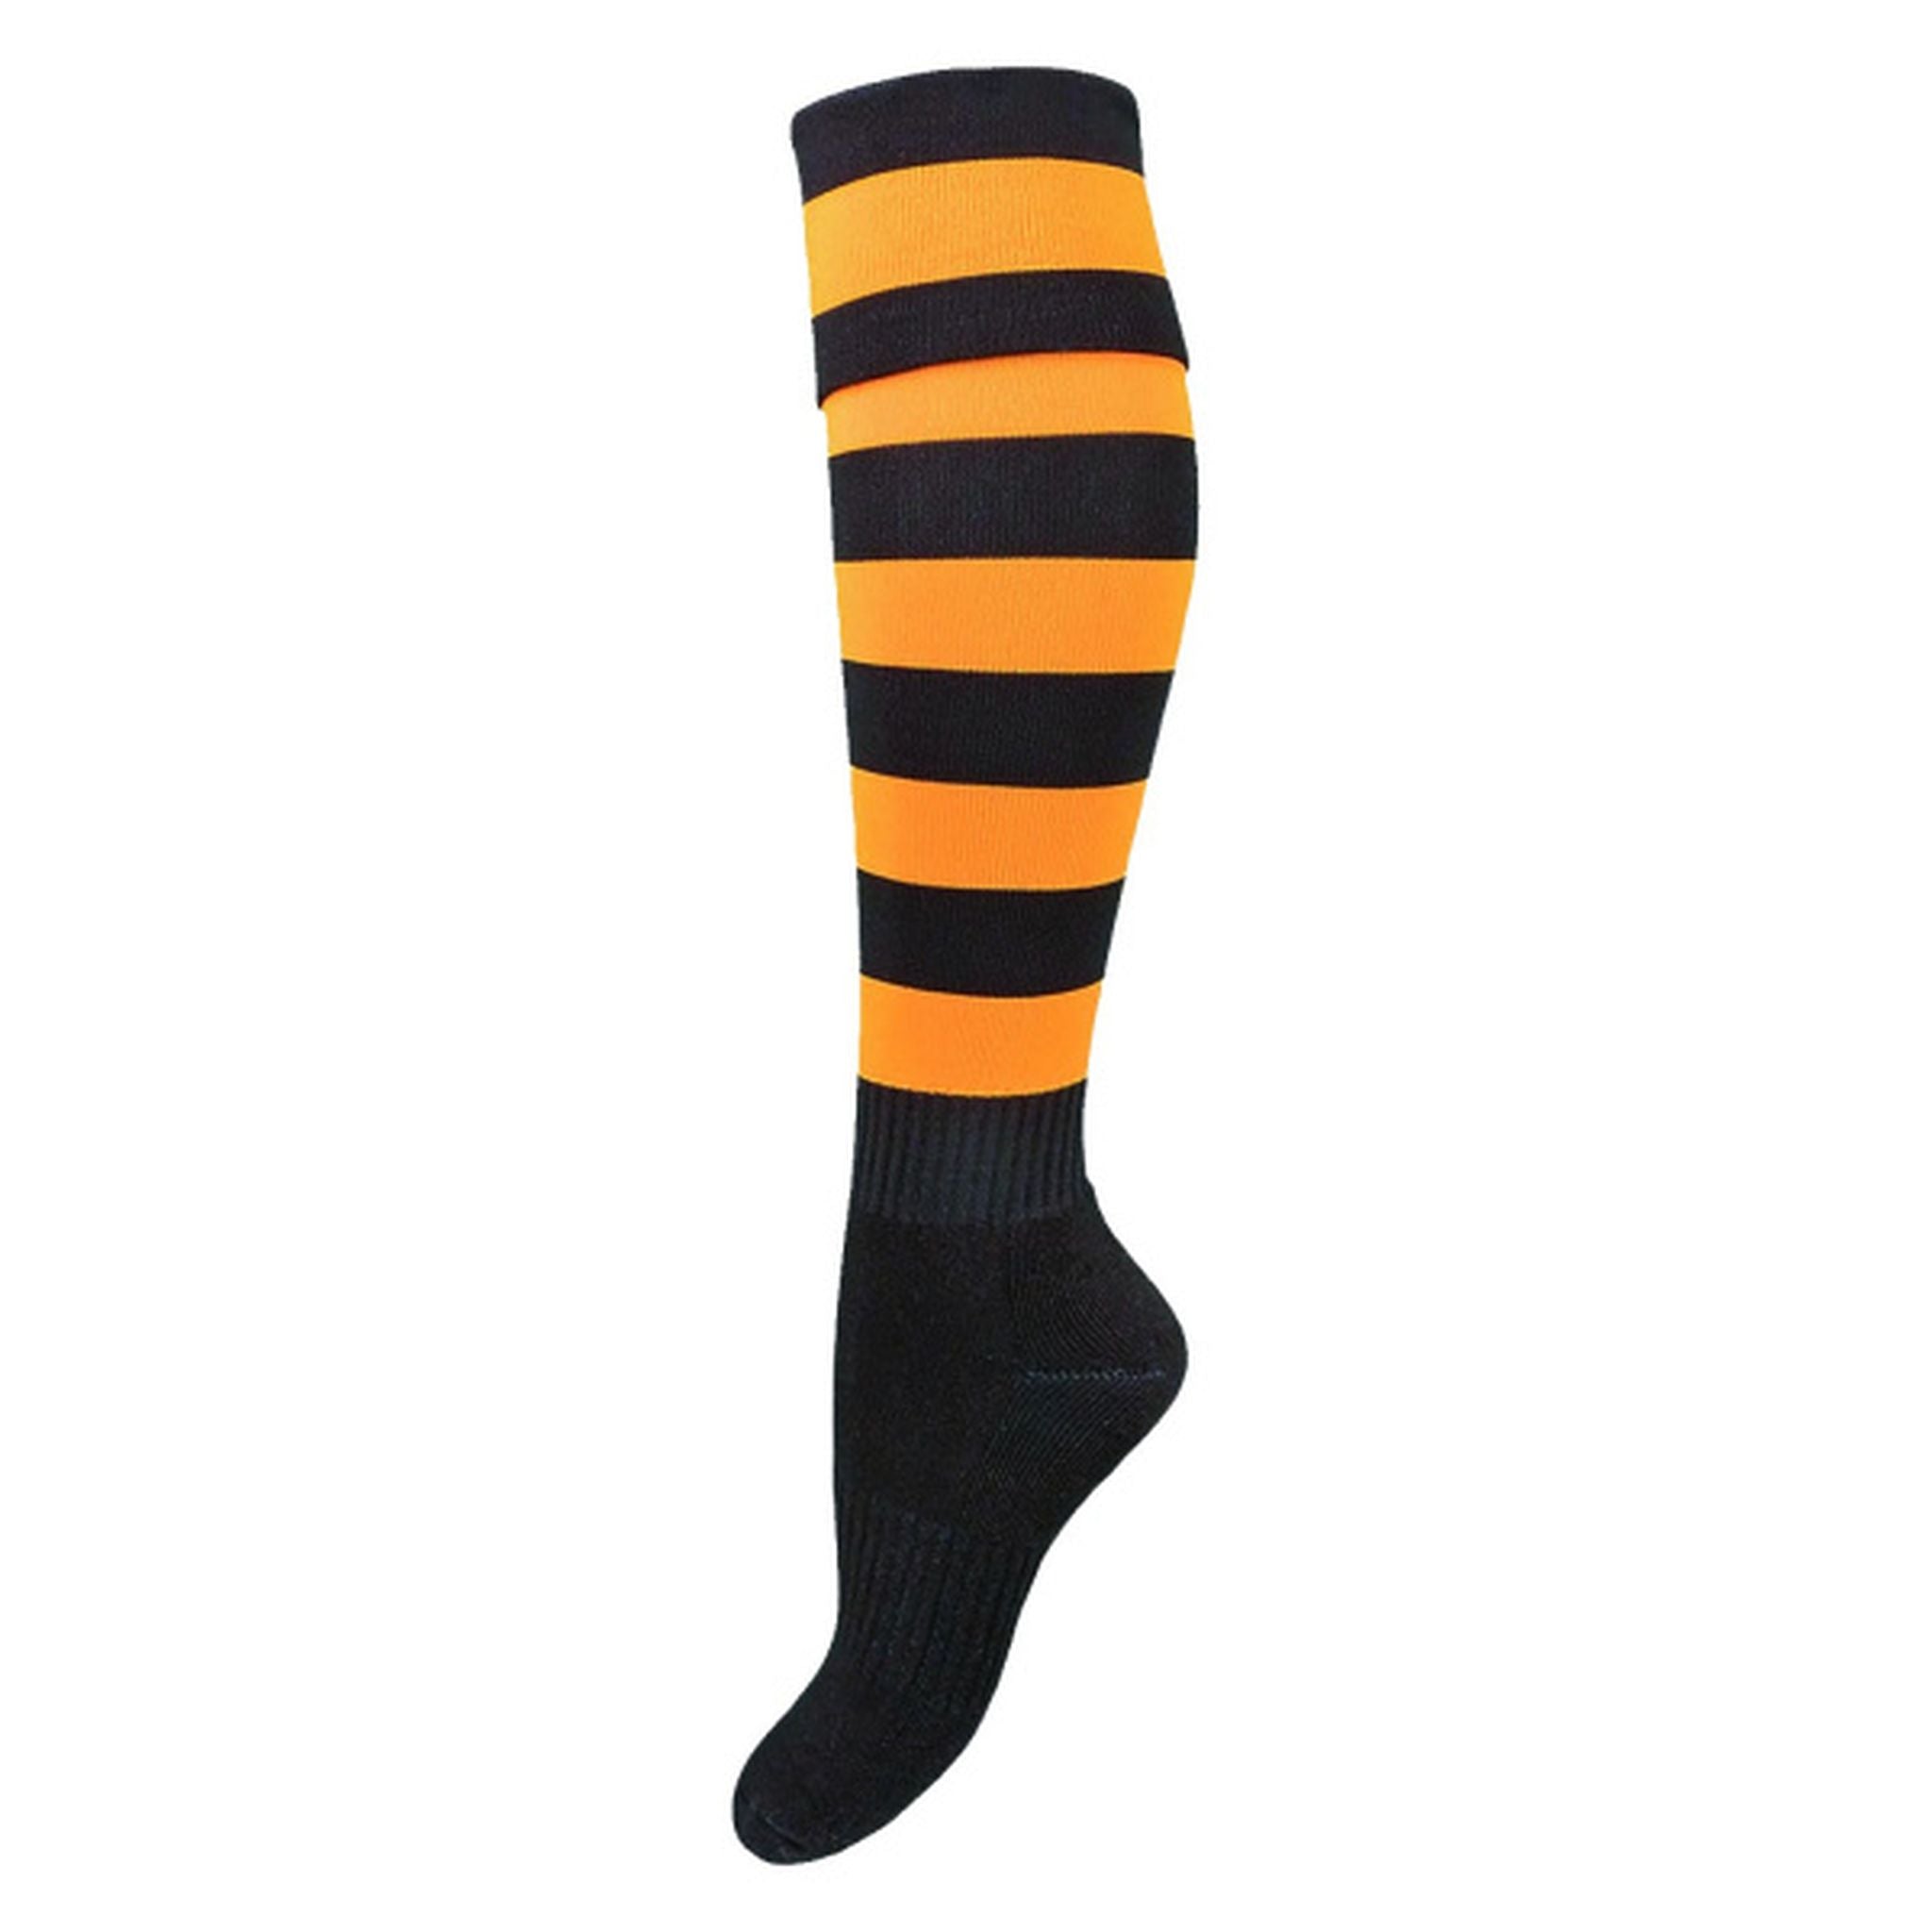 Burley Hawthorn Hawks AFL Elite Adult Football Socks